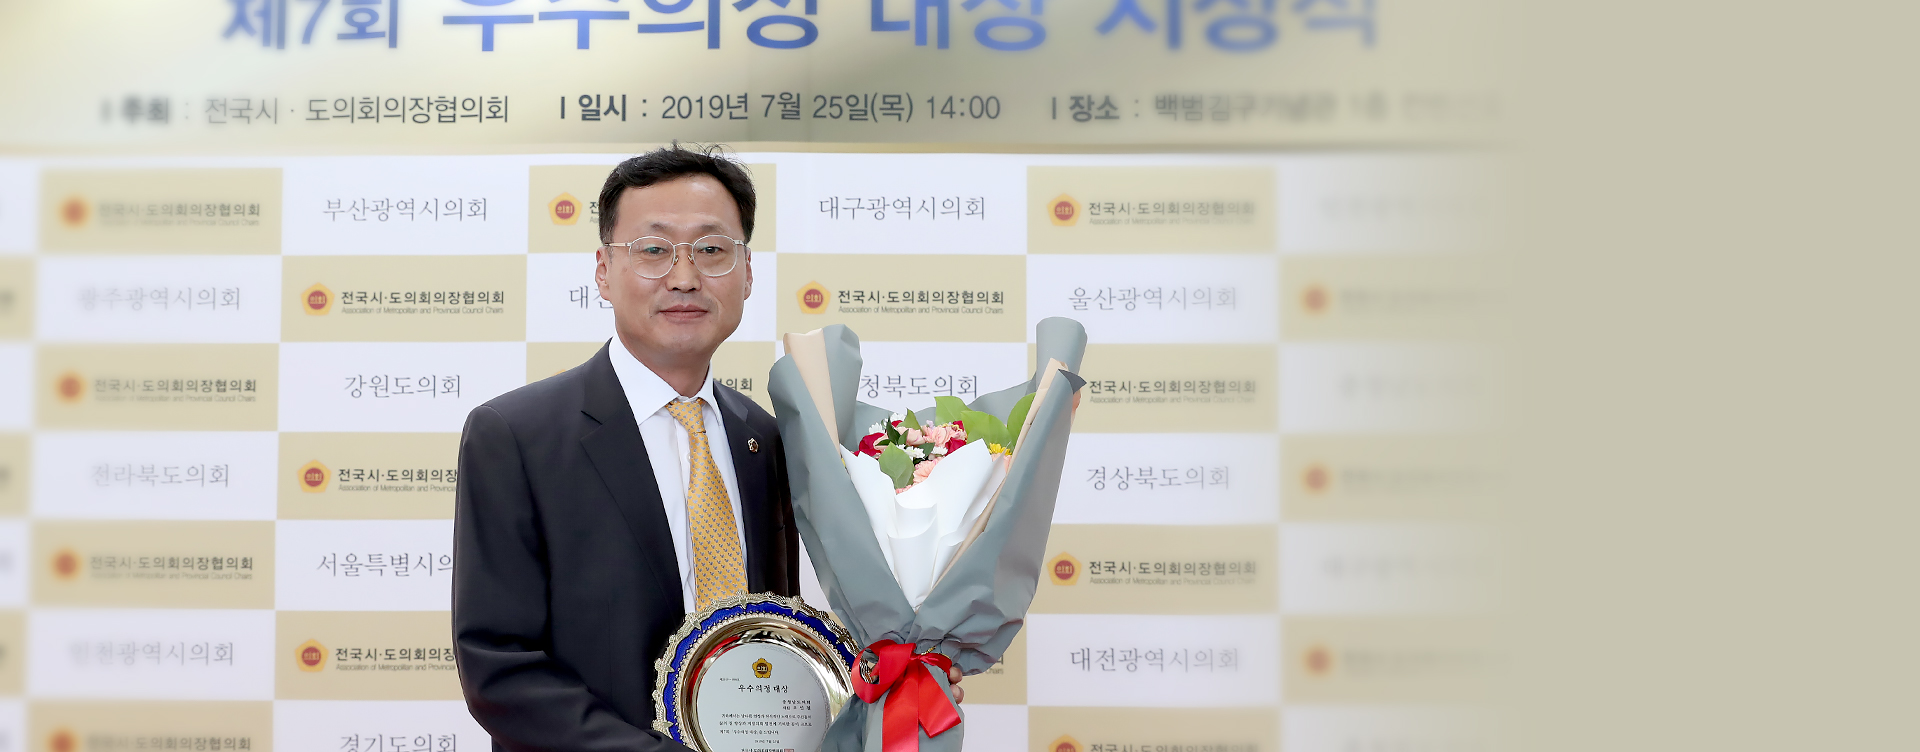 김득응 의원